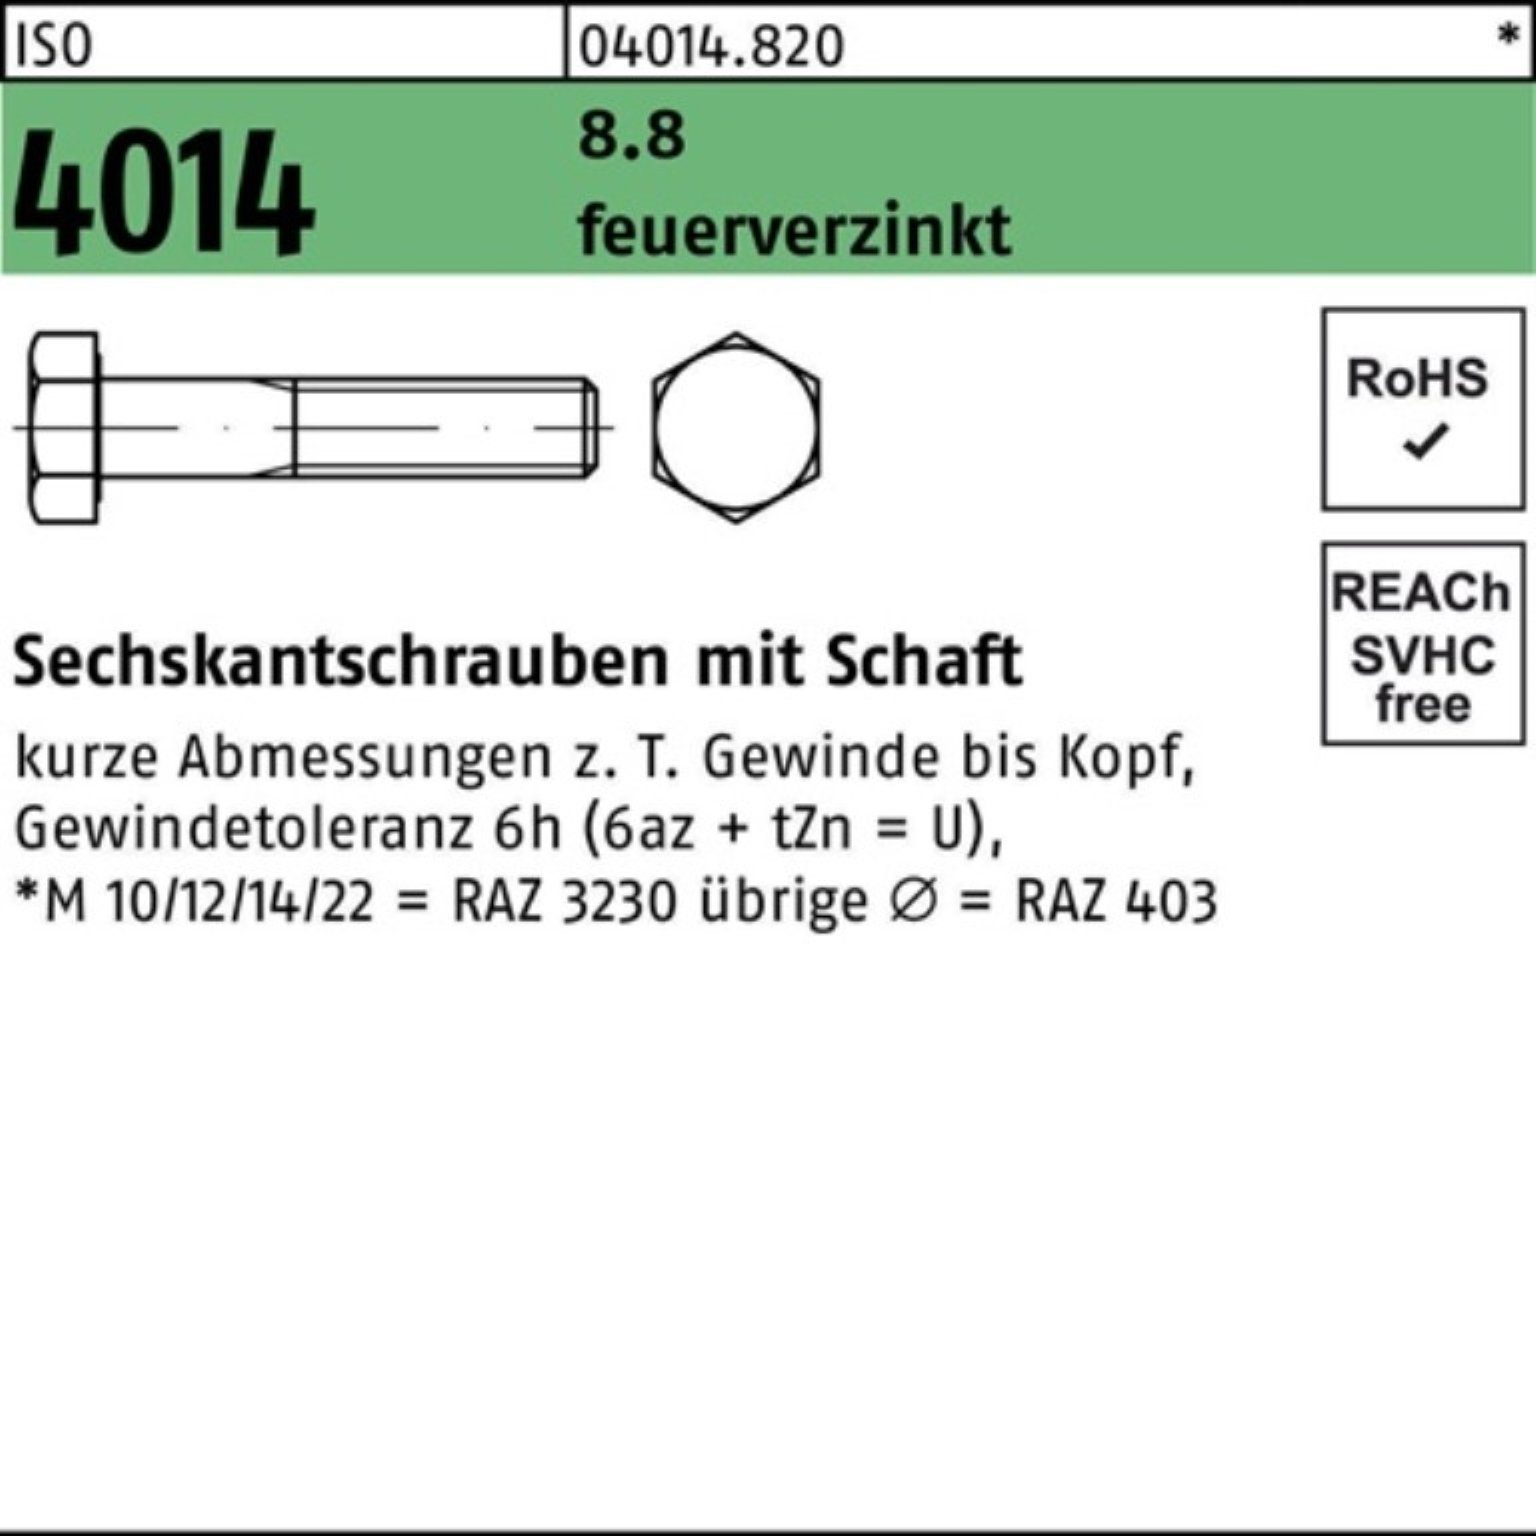 Bufab Sechskantschraube 100er Pack Sechskantschraube ISO 4014 Schaft M24x 130 8.8 feuerverz. 1